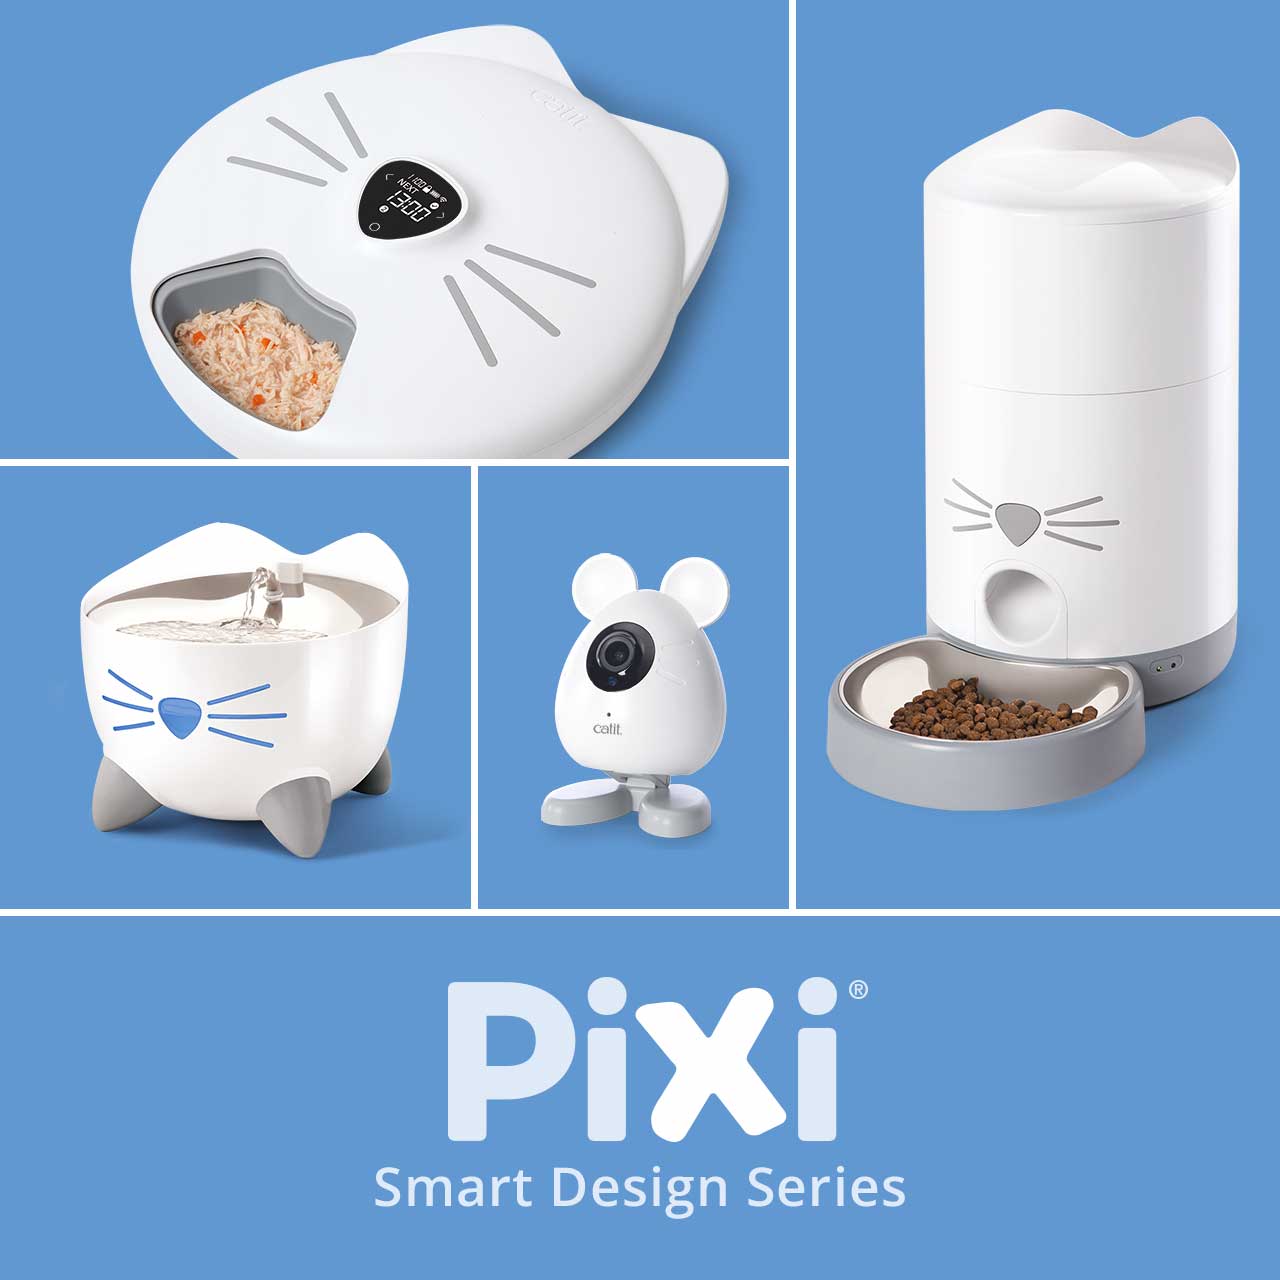 PIXI Smart Design Series